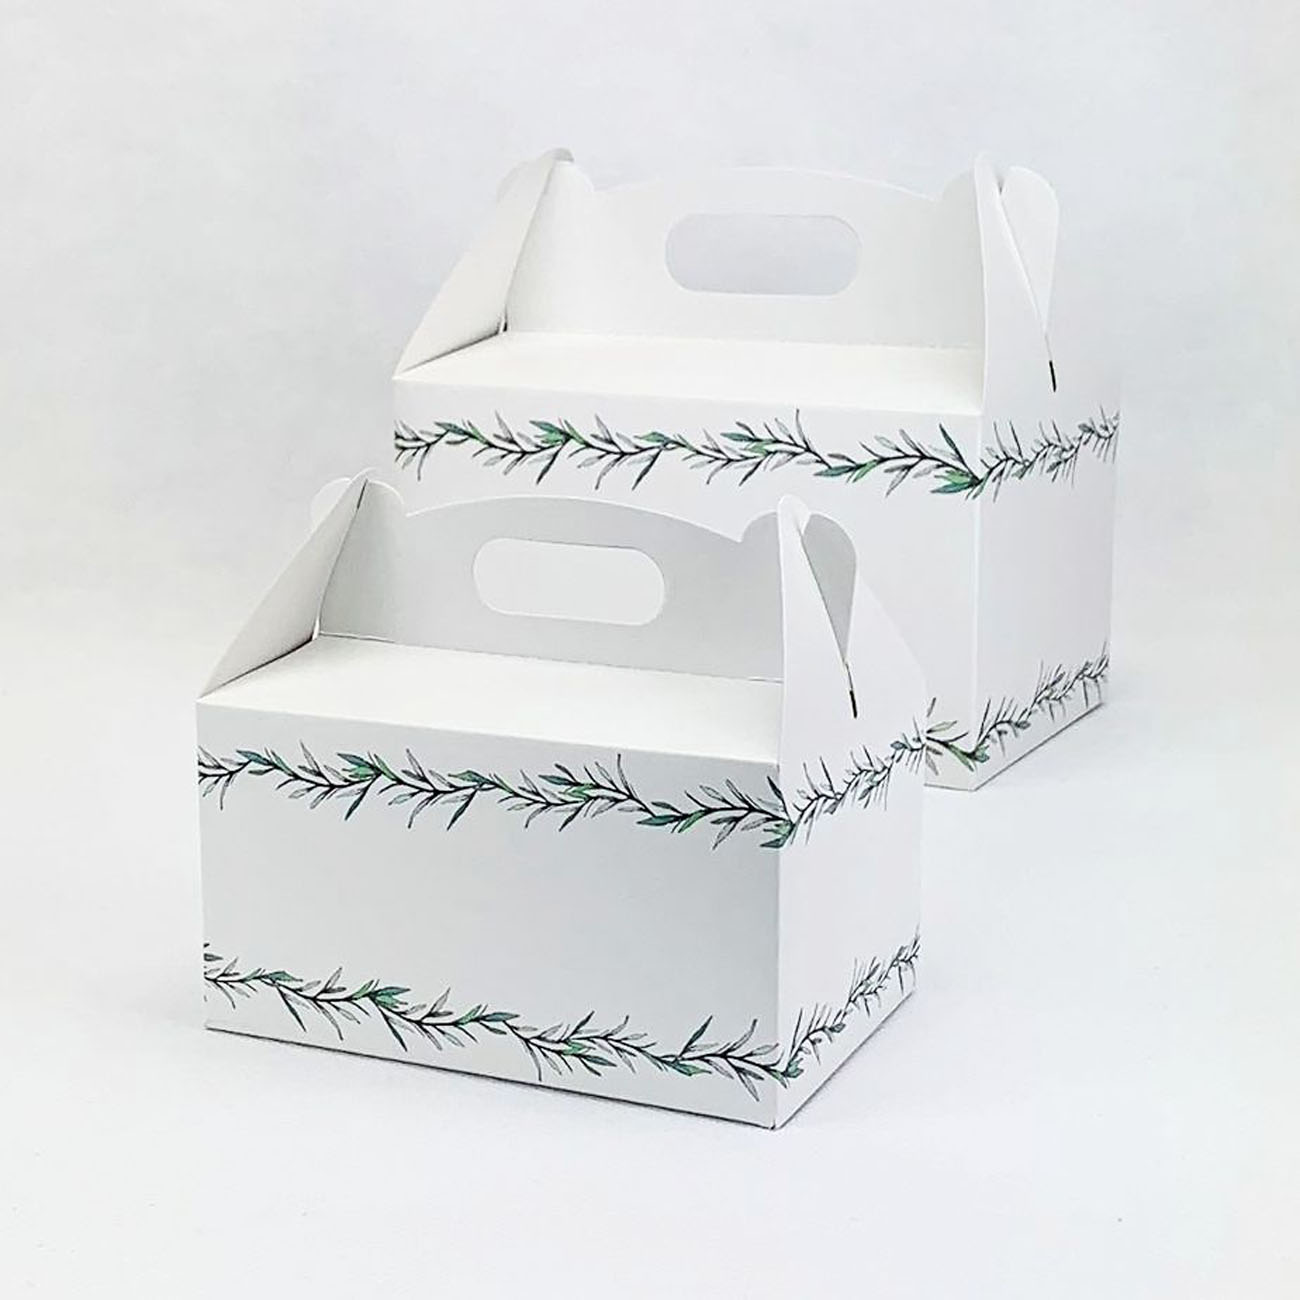 Svatební krabička střední s rozmarýnem - K56-4000-01